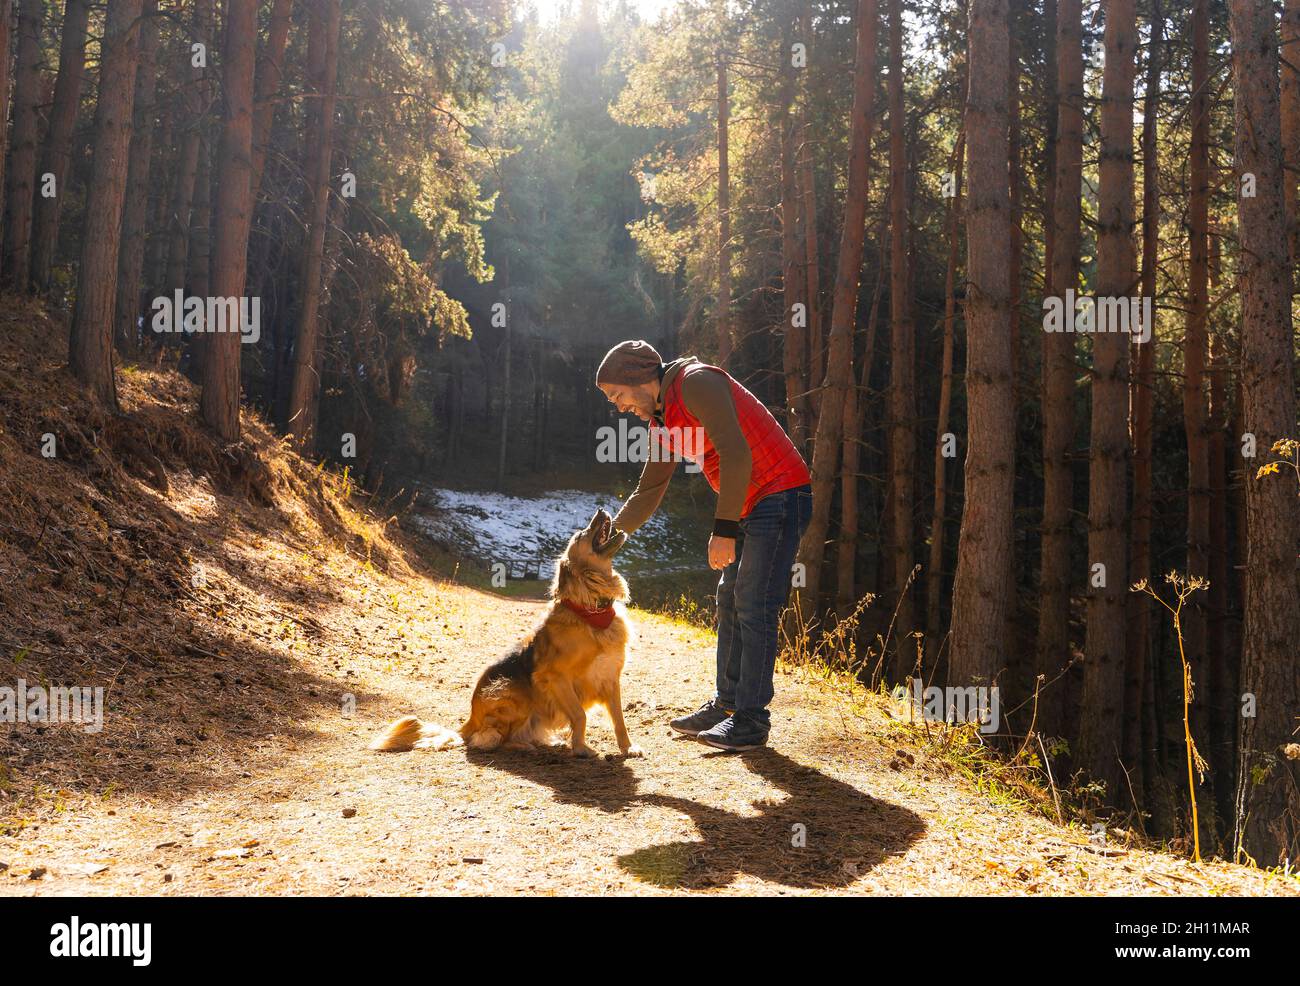 Homme jouant avec un chien dans une forêt éclairée par la lumière du soleil.Saison d'automne. Banque D'Images